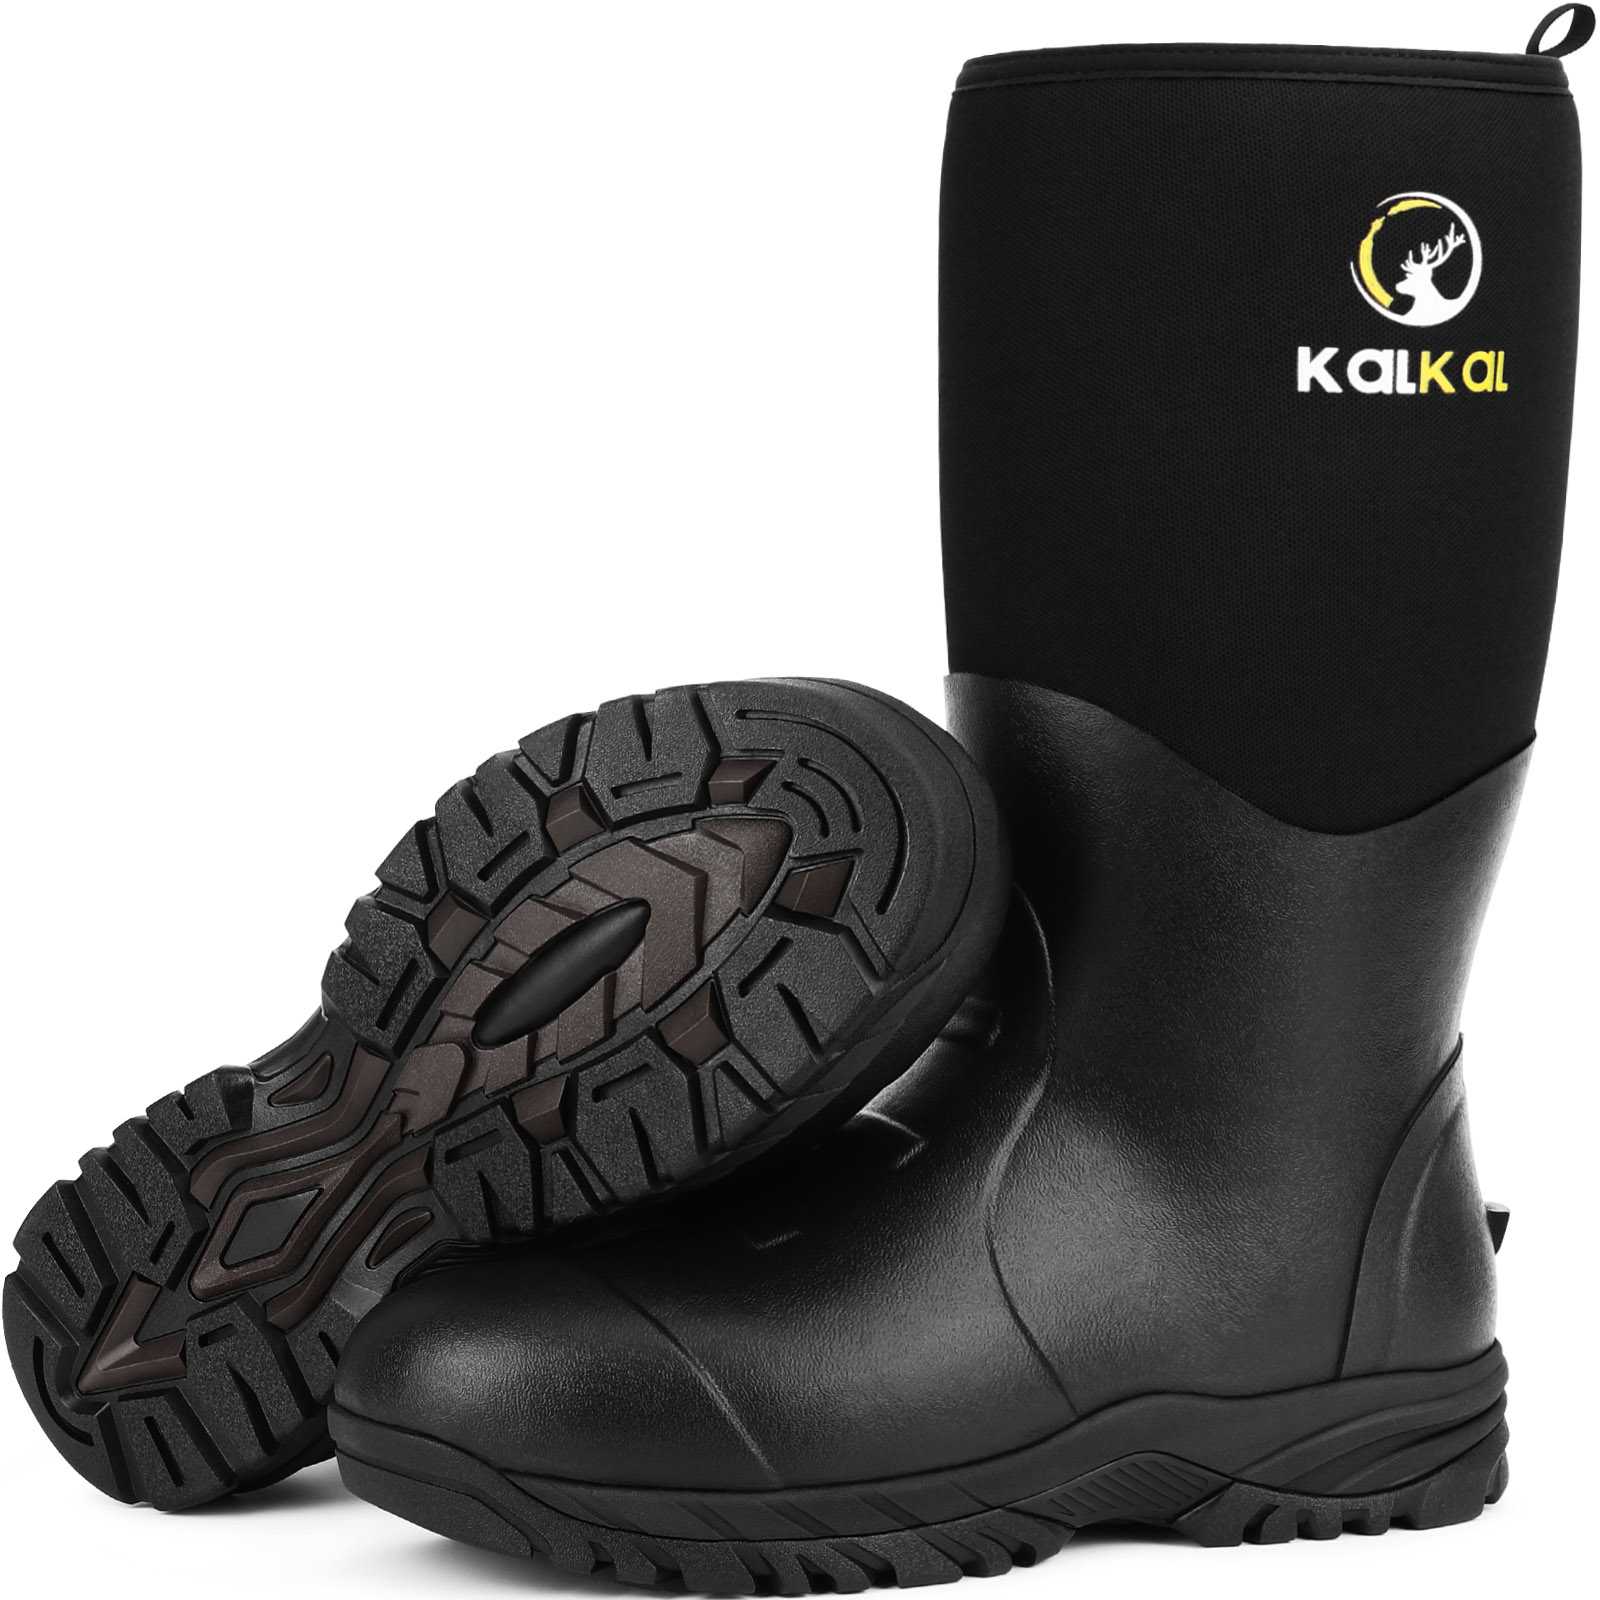 kalkal steel shank farm boots - kalk012 black